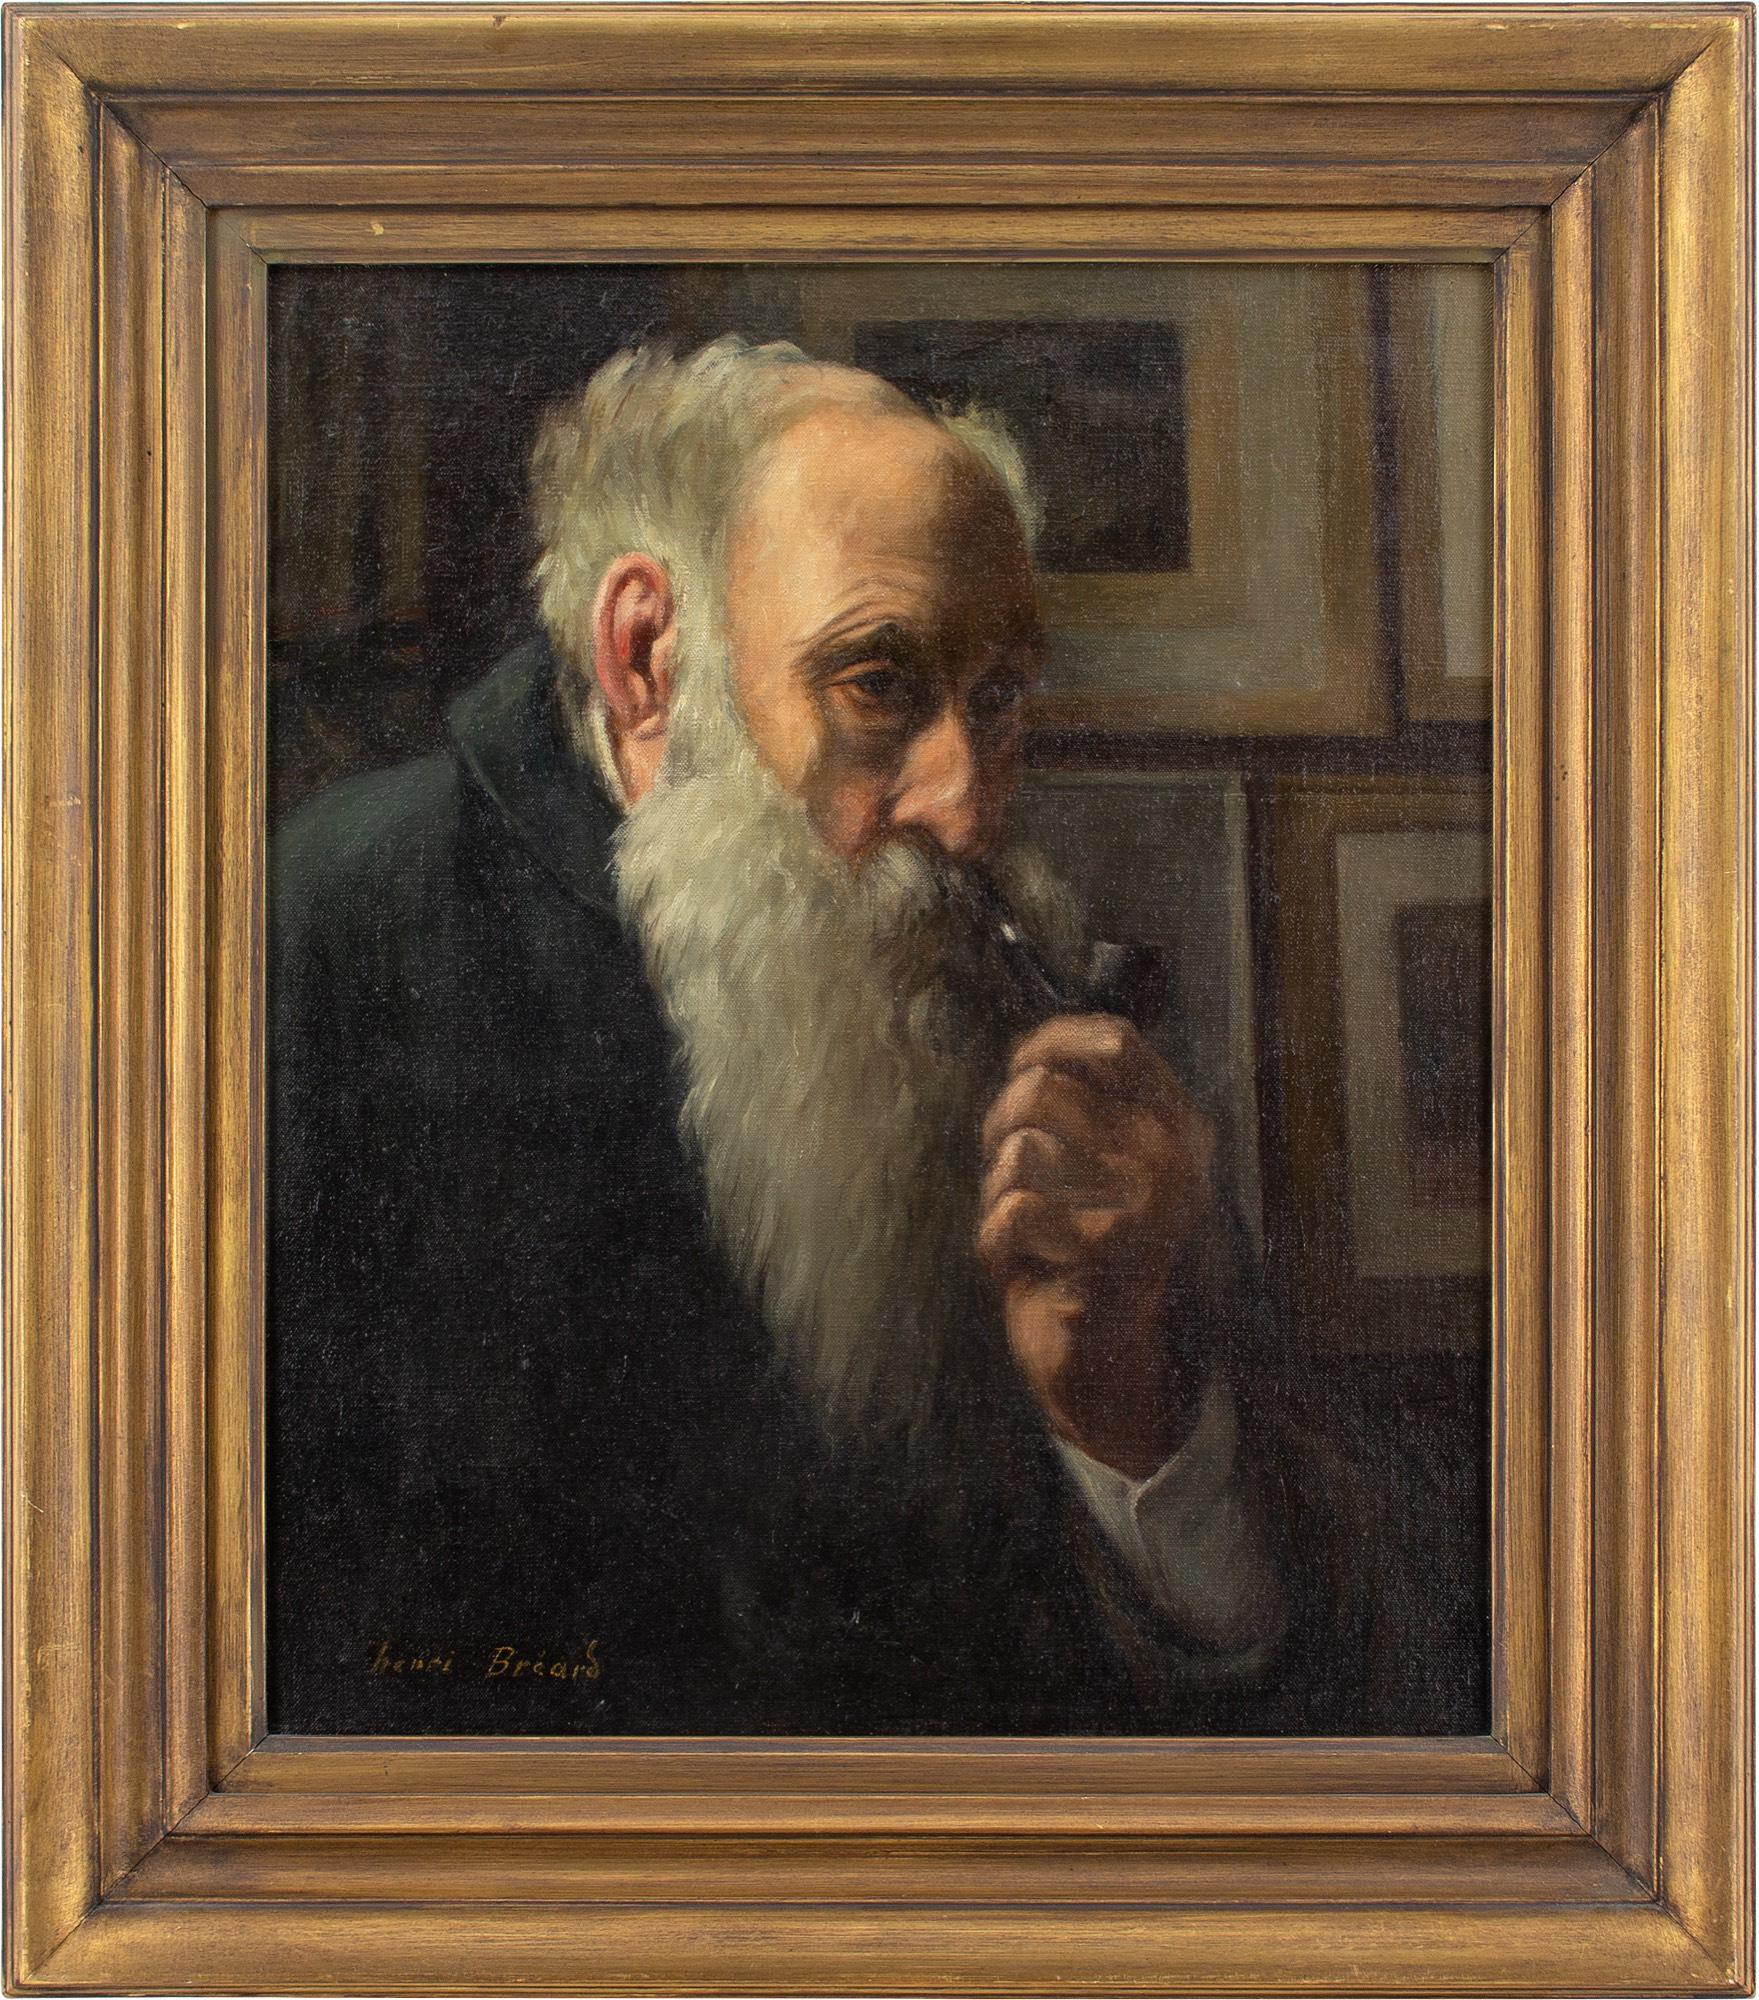 Cet autoportrait d'Henri-Georges Bréard (1873-c.CRY, 1939), datant du début ou du milieu du XXe siècle, représente l'artiste plongé dans ses pensées. Il tient une pipe.

Henri-Georges Bréard était un peintre français accompli de paysages, de scènes,